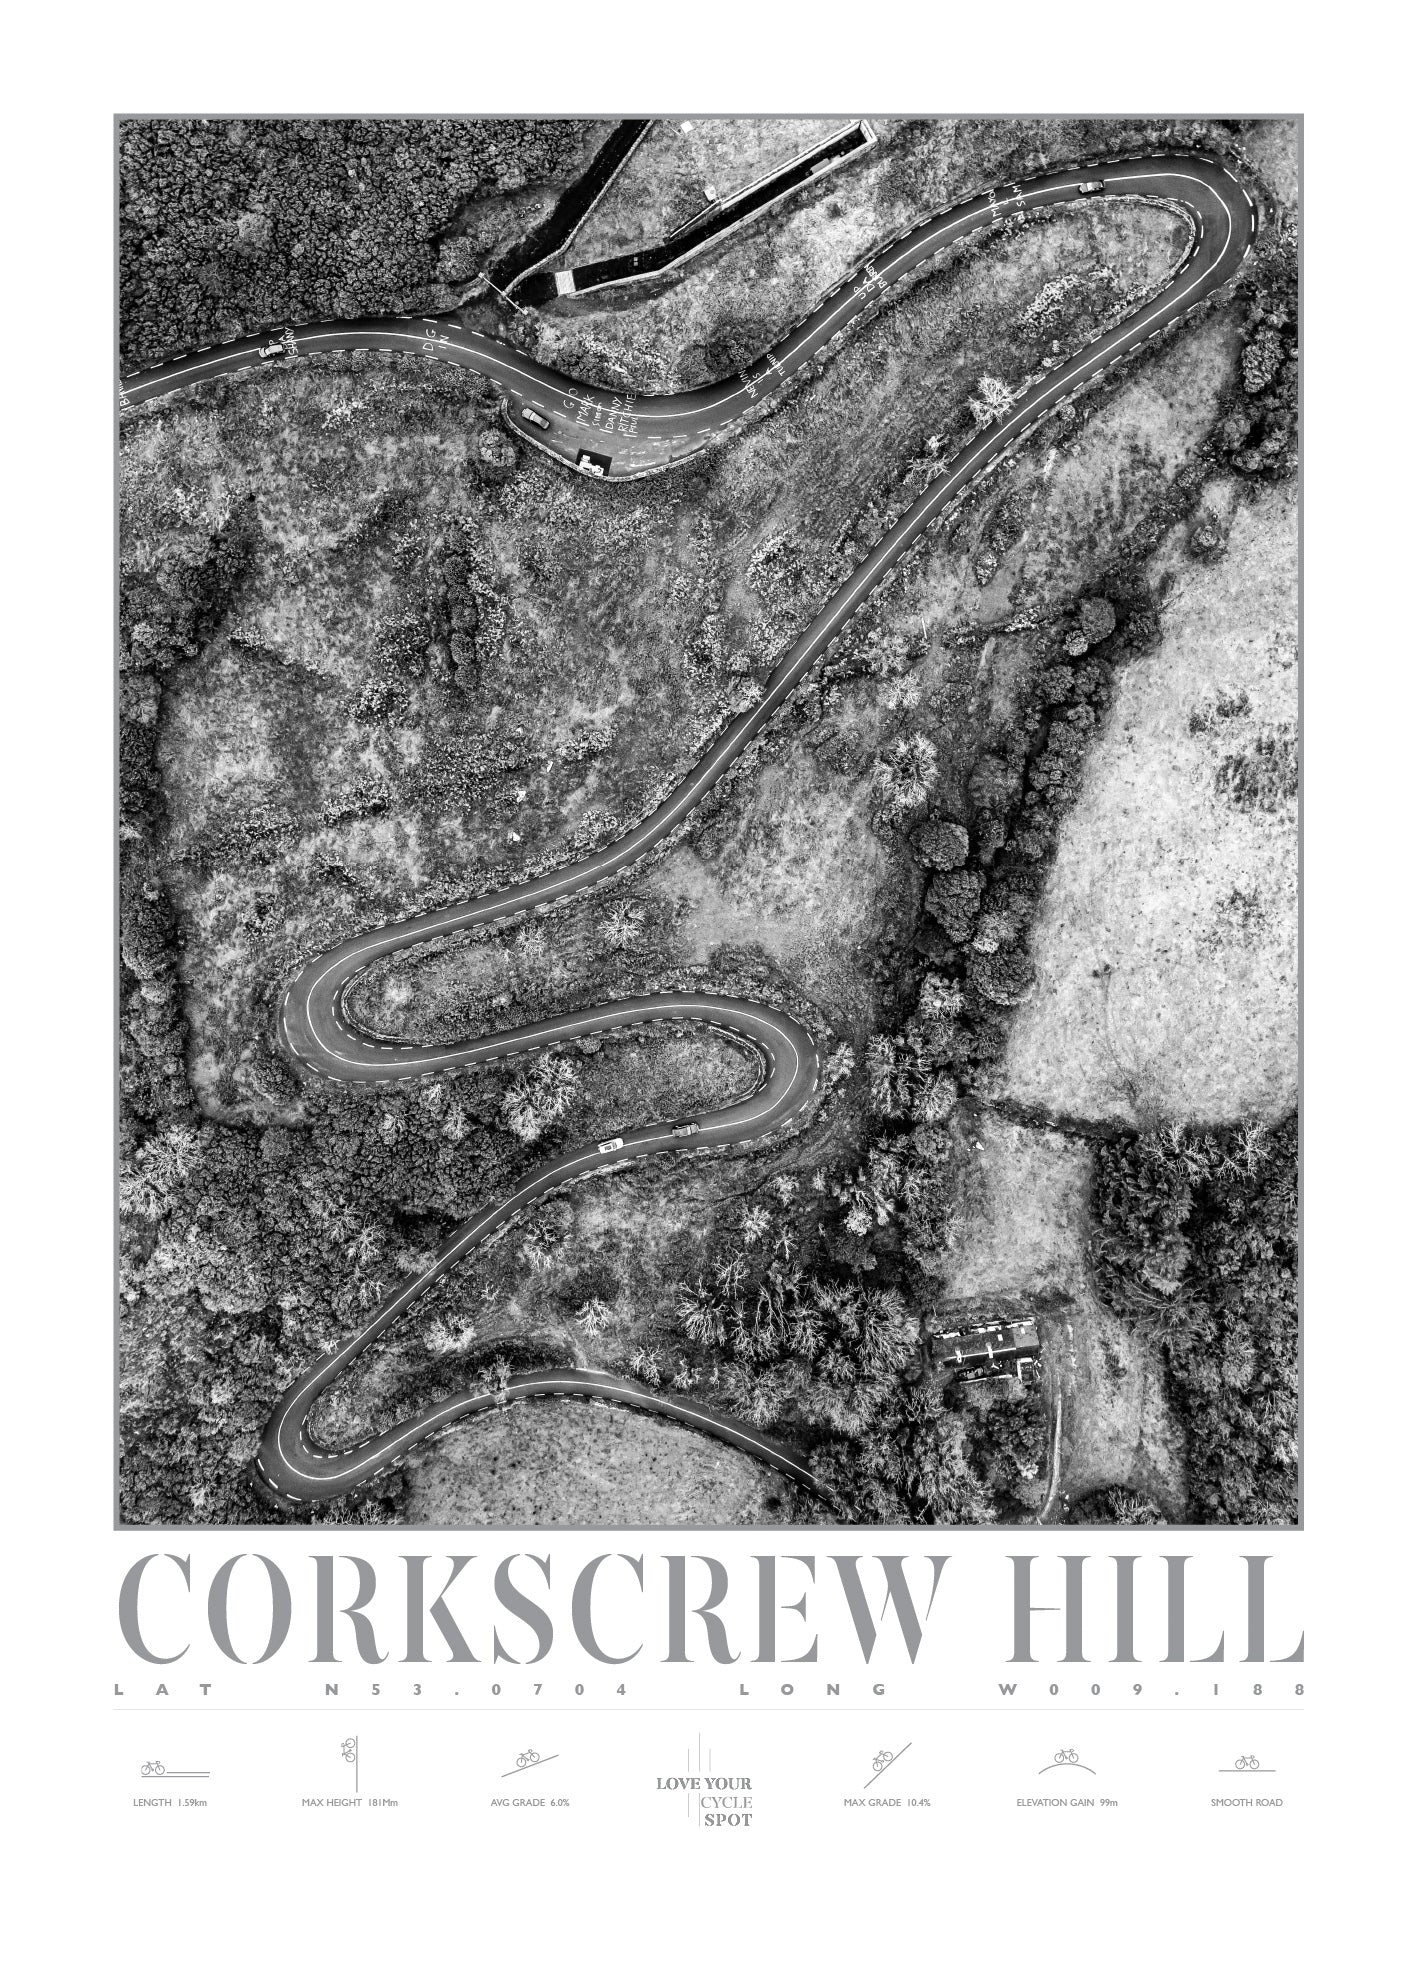 CORKSCREW HILL CO CLARE